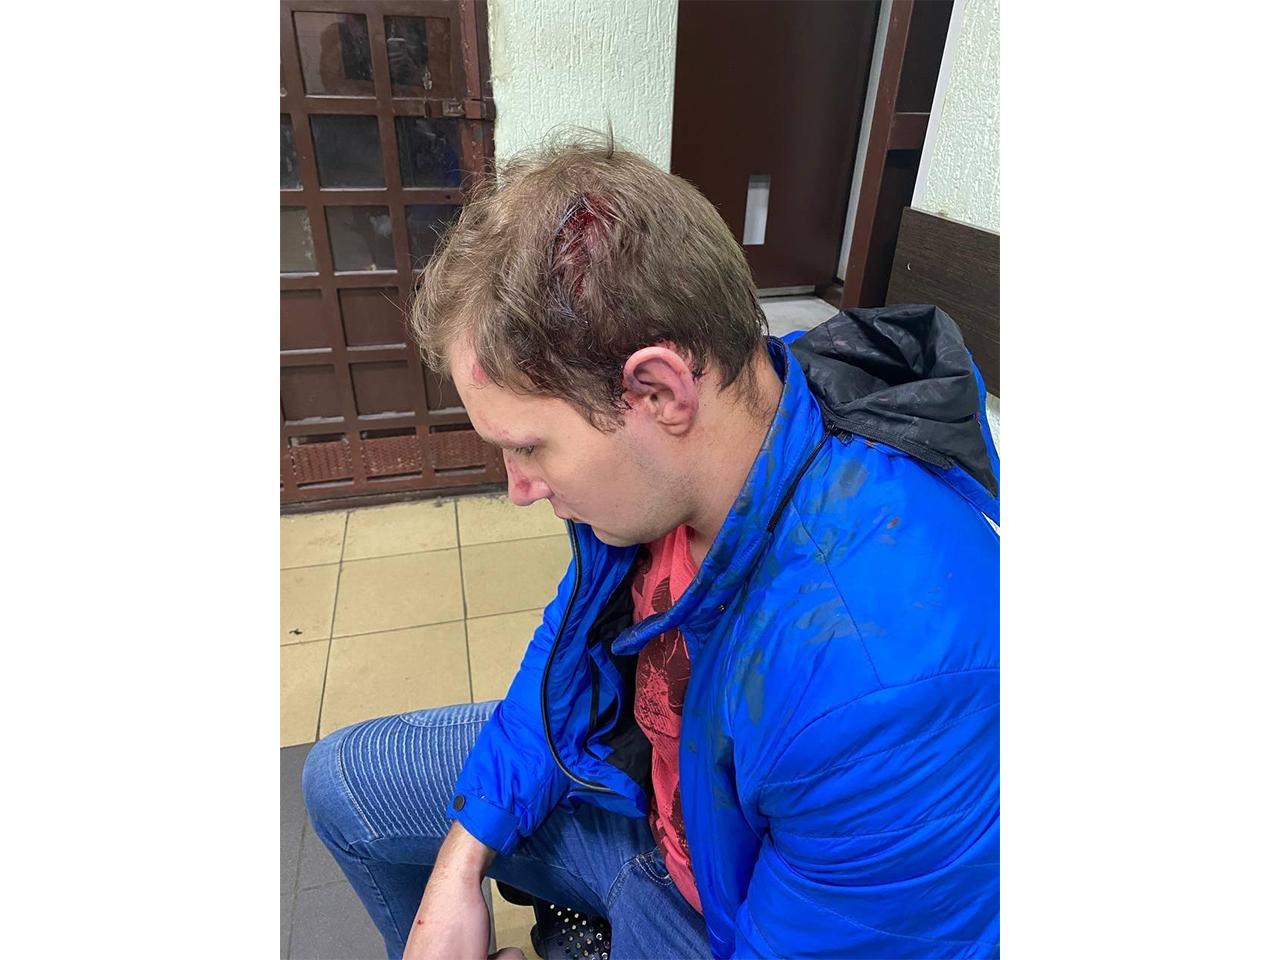 Saint-Pétersbourg, homme qui a été frappé à la tête lors de son arrestation. Il a été emmené par une ambulance.  6 mars 2022 / Photo fournie par un témoin oculaire